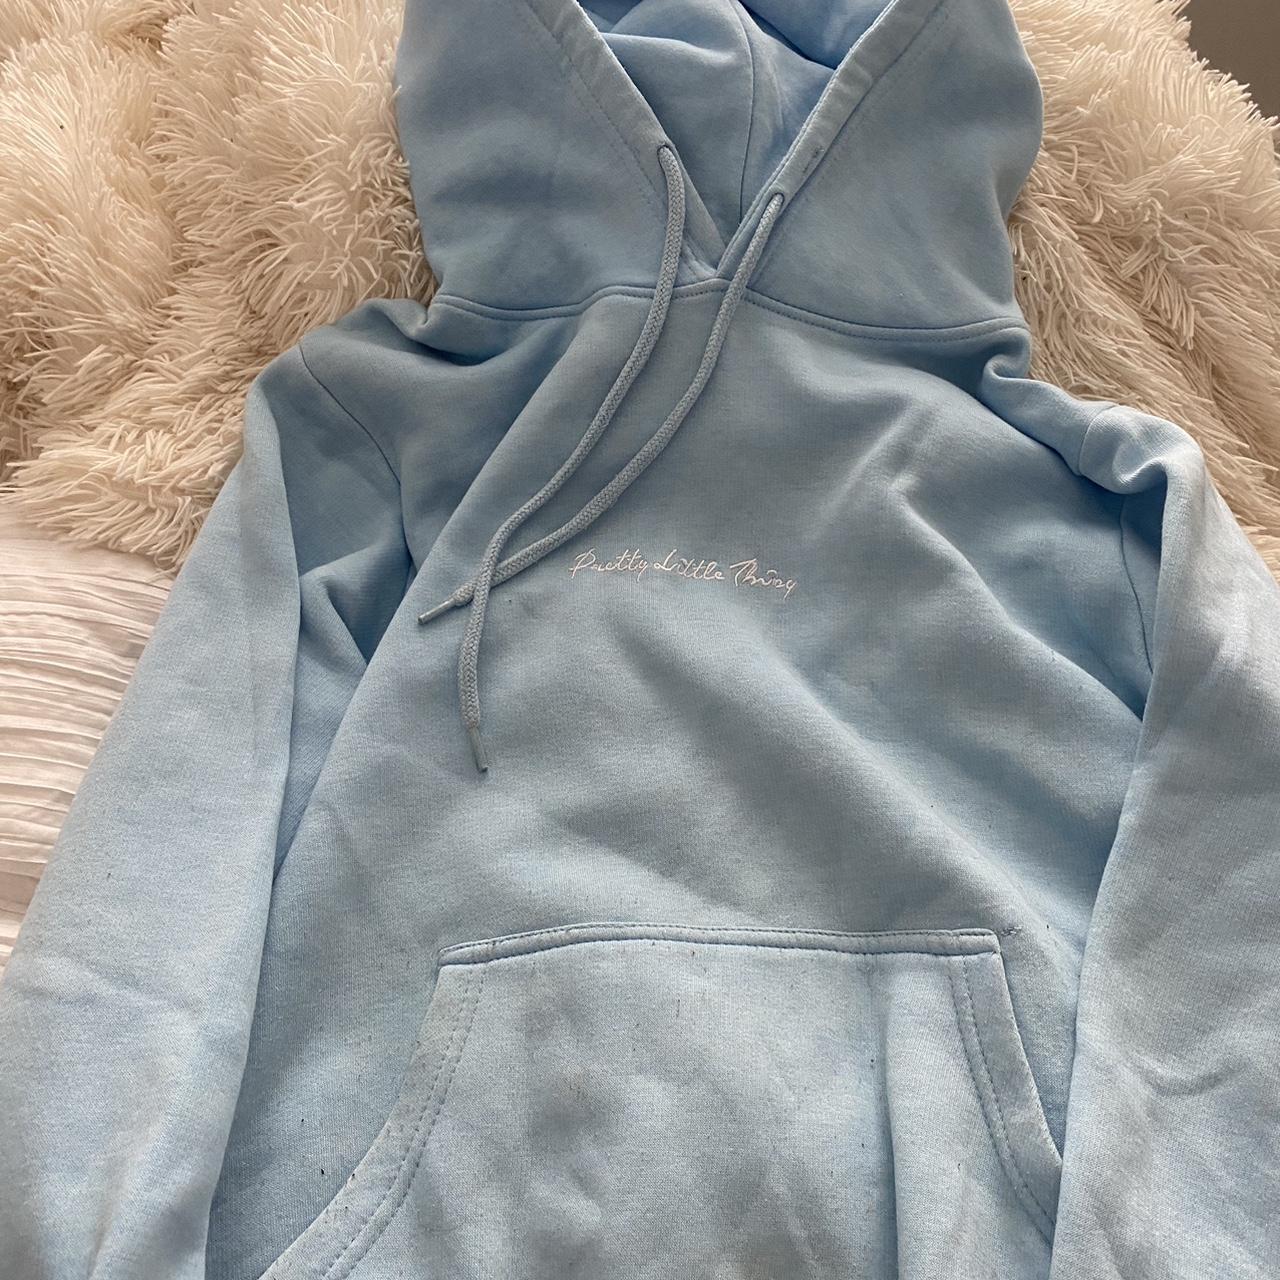 plt baby blue hoodie size m - Depop